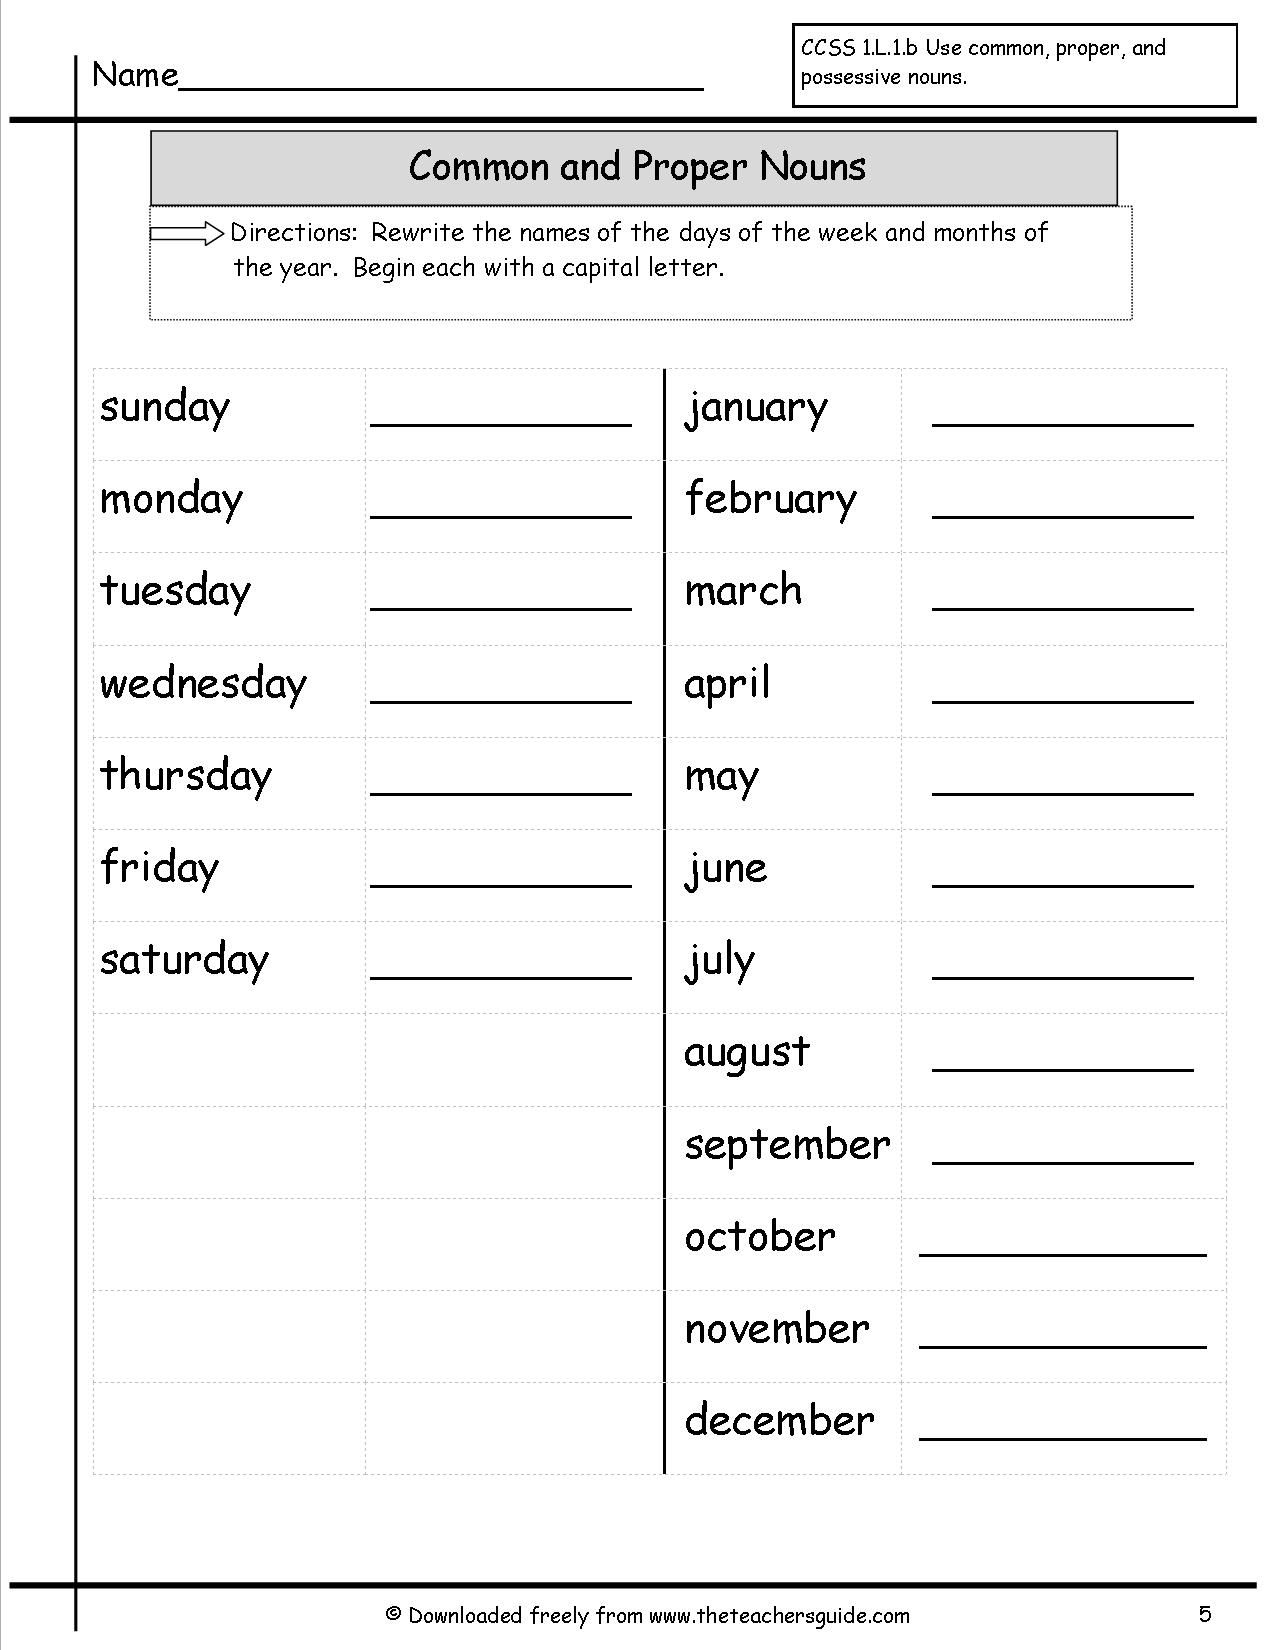 common-proper-nouns-worksheet-grade-1-commonworksheets